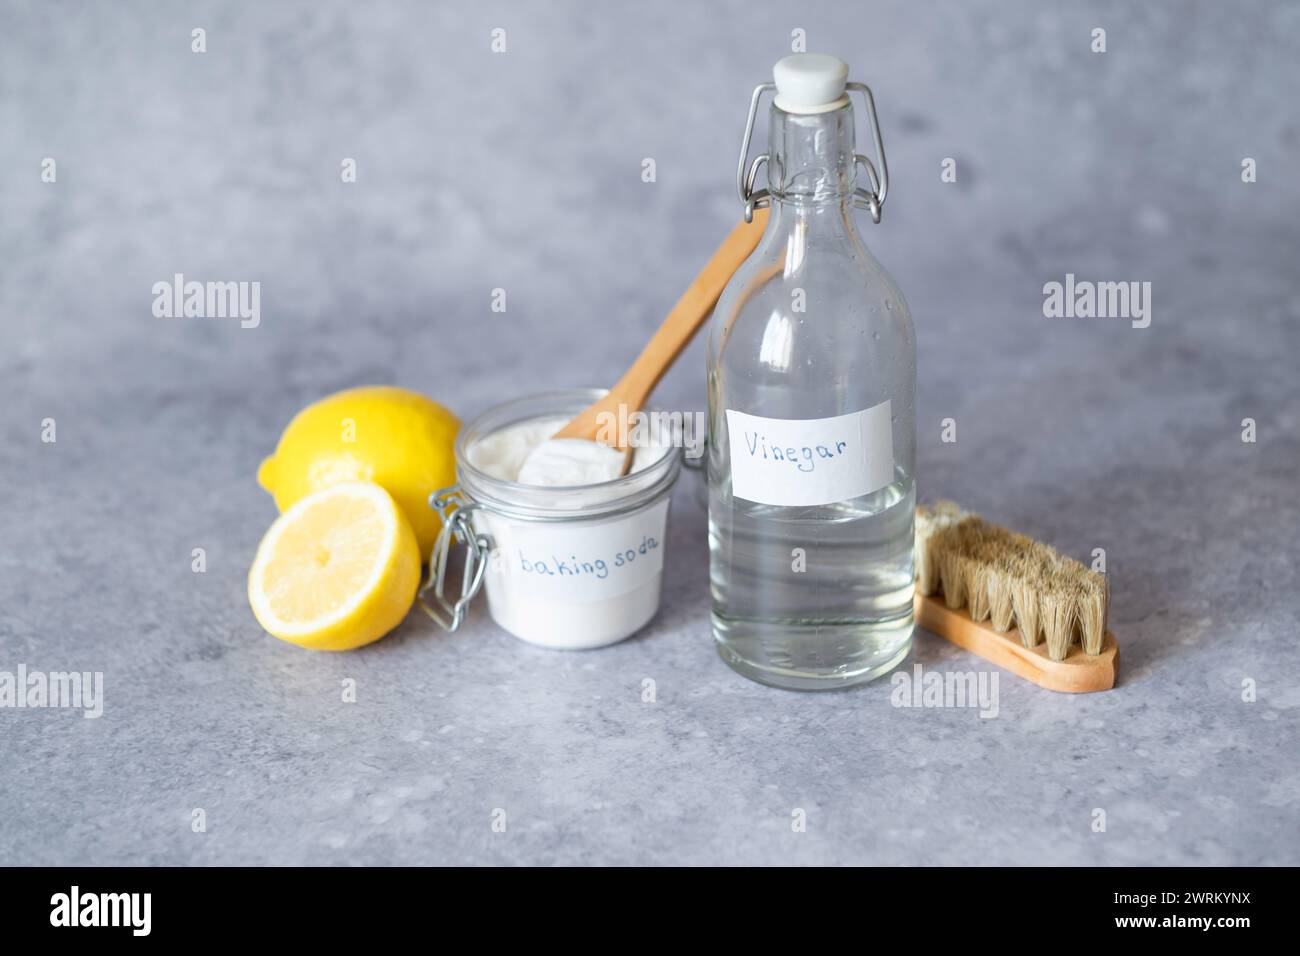 Prodotti per la pulizia ecologici: Aceto bianco, bicarbonato, limone, spazzola. Le alternative di pulizia ecologiche su superfici diverse rimuovono le macchie. Foto Stock